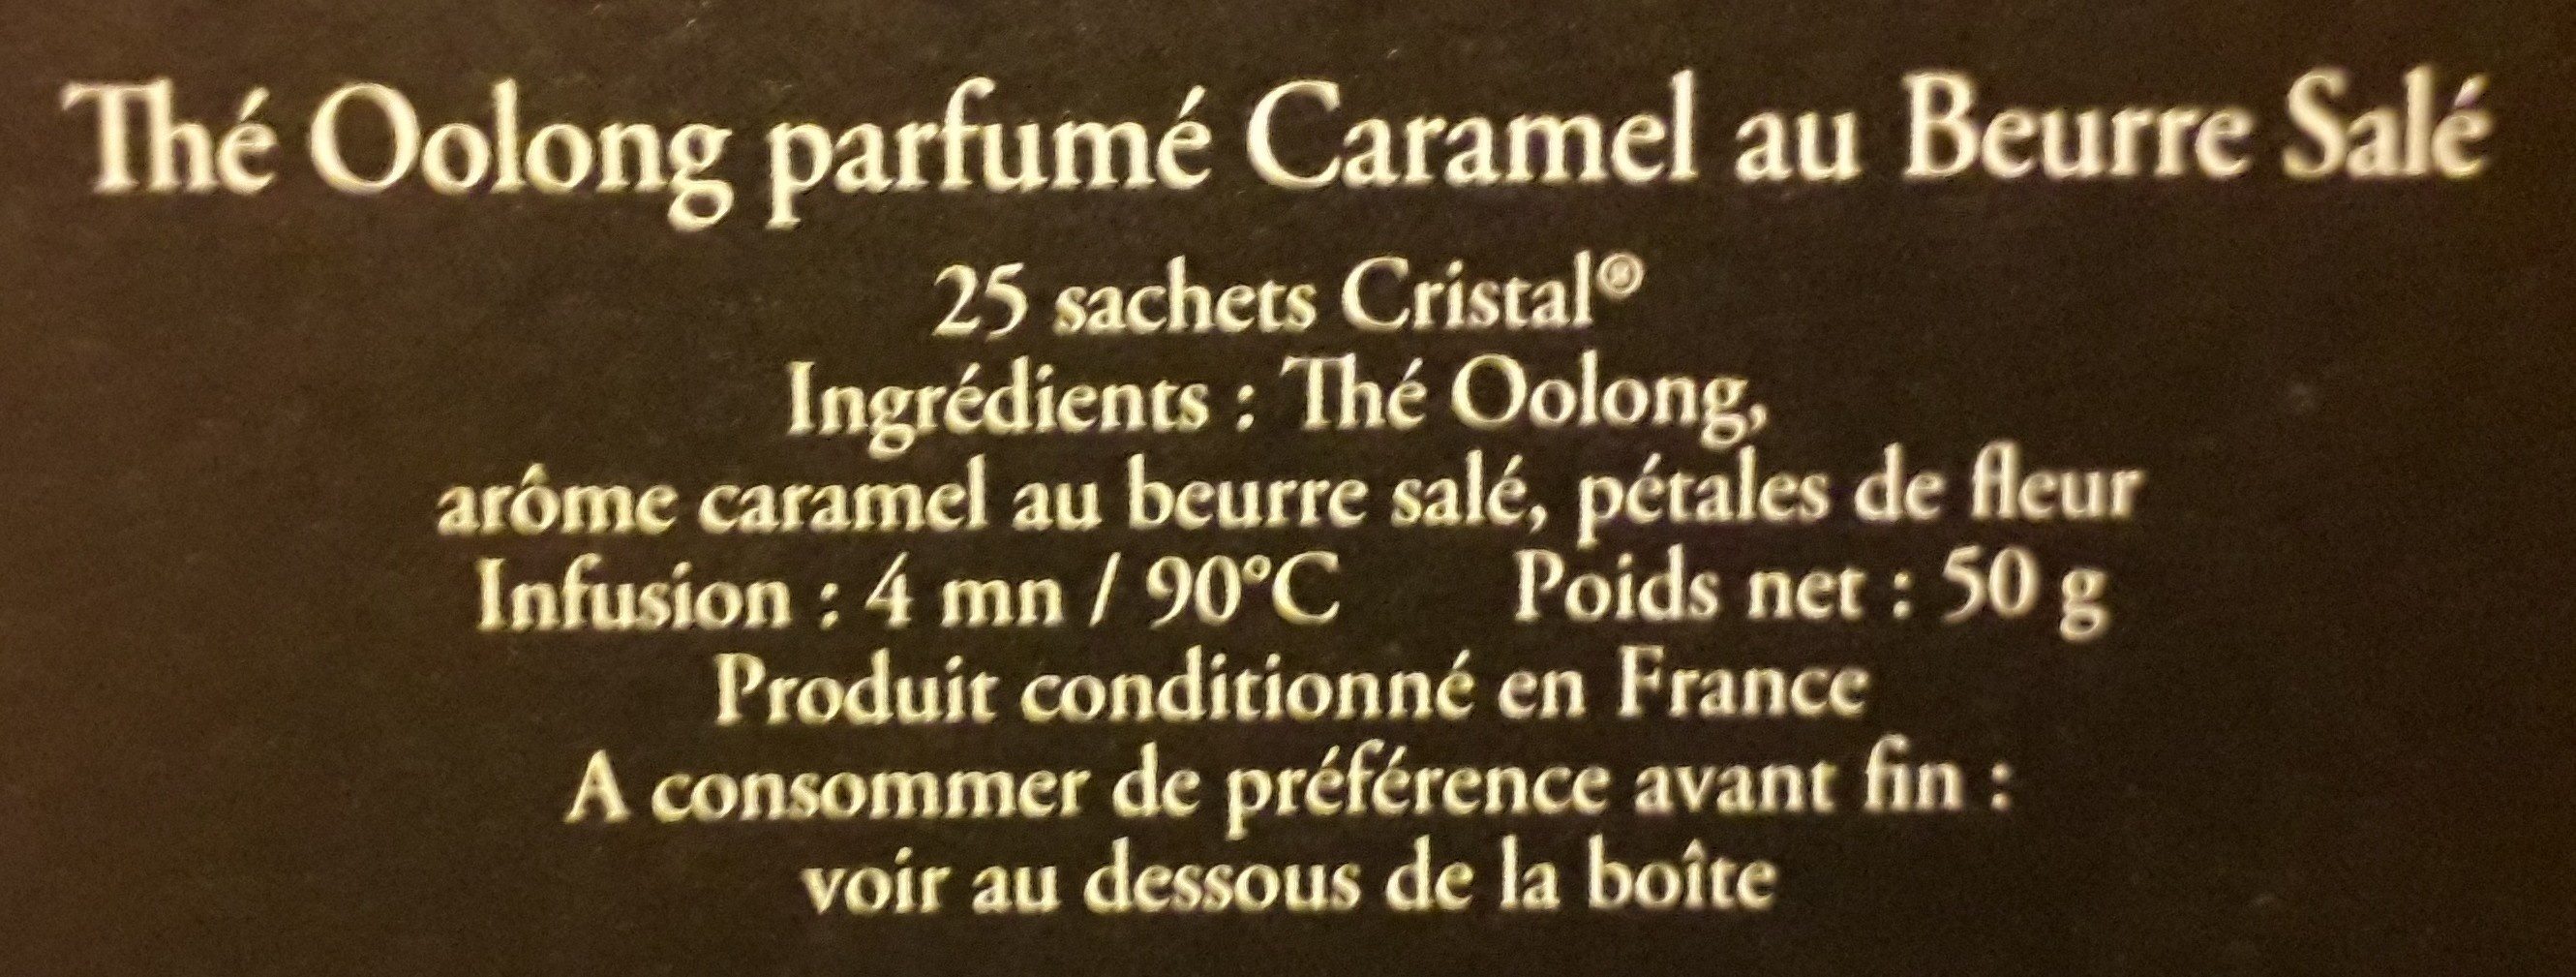 Thé Oolong parfumé Caramel au Beurre Salé - Ingredientes - fr